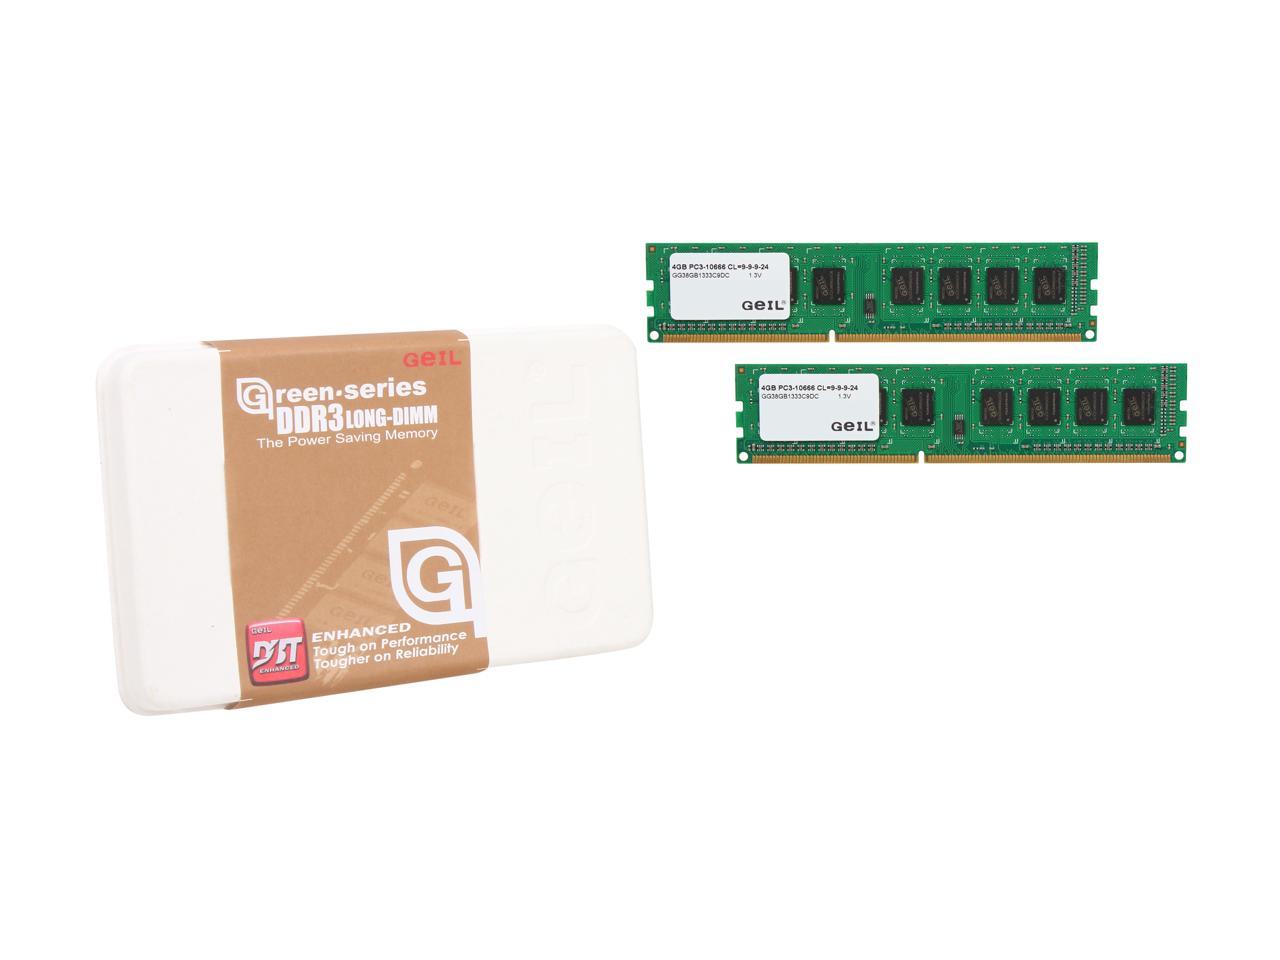 GeIL Green Series 8GB (2 x 4GB) 240-Pin DDR3 SDRAM DDR3L 1333 (PC3L 10600) Desktop Memory Model GG38GB1333C9DC